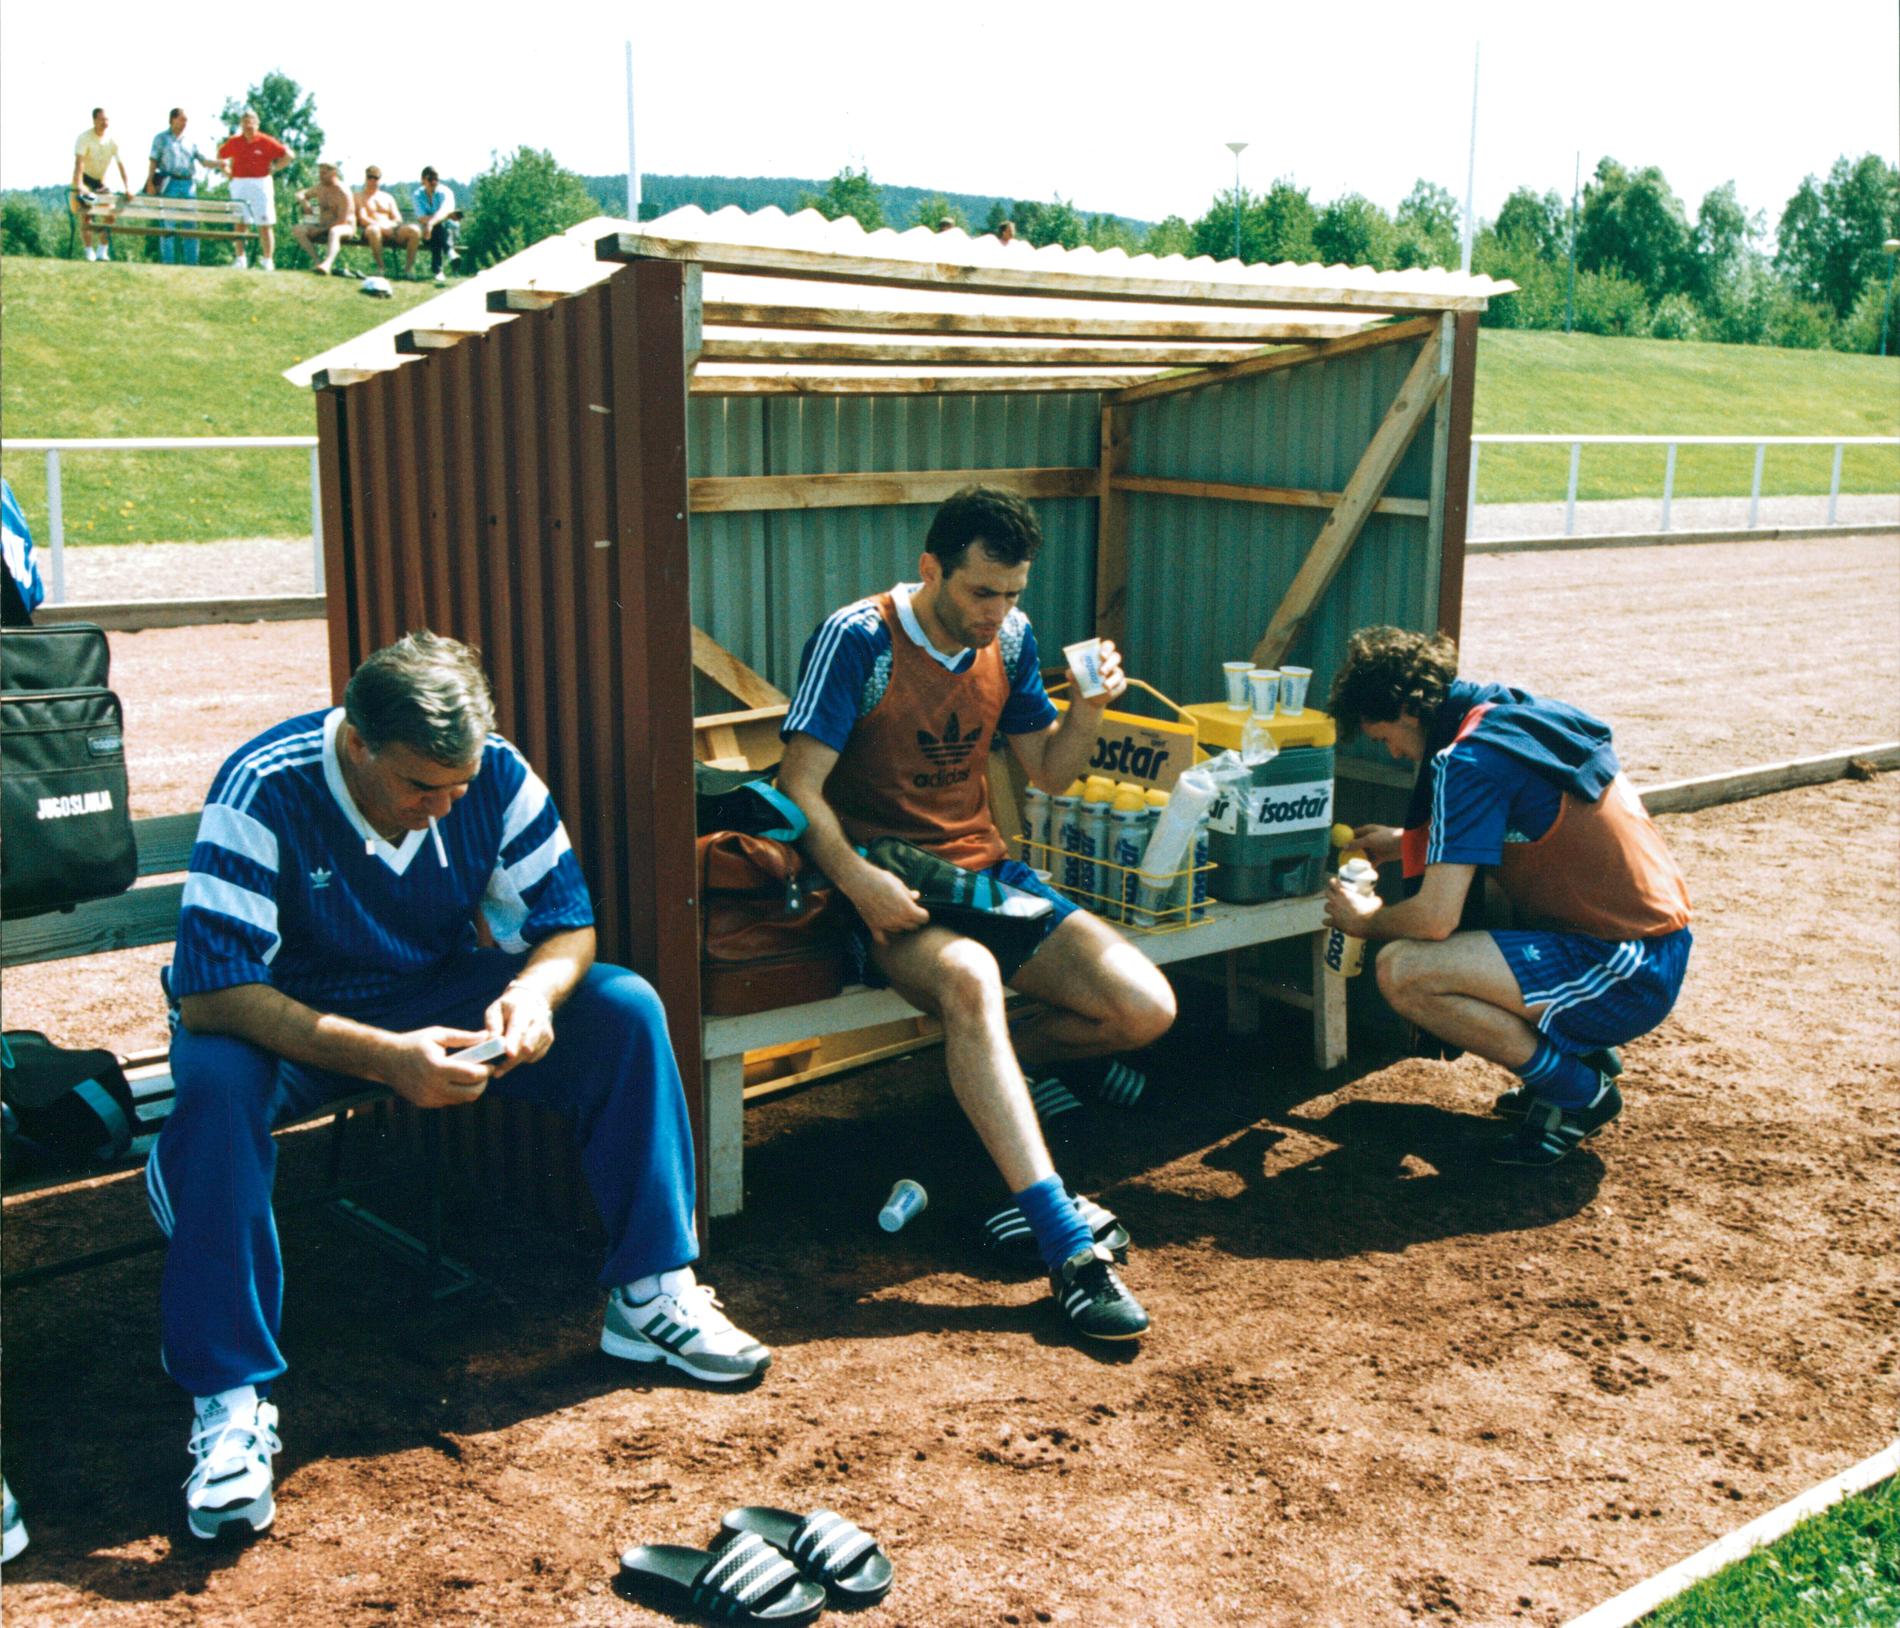 Budimir Vojacic, mitten, var en av spelarna i laget.